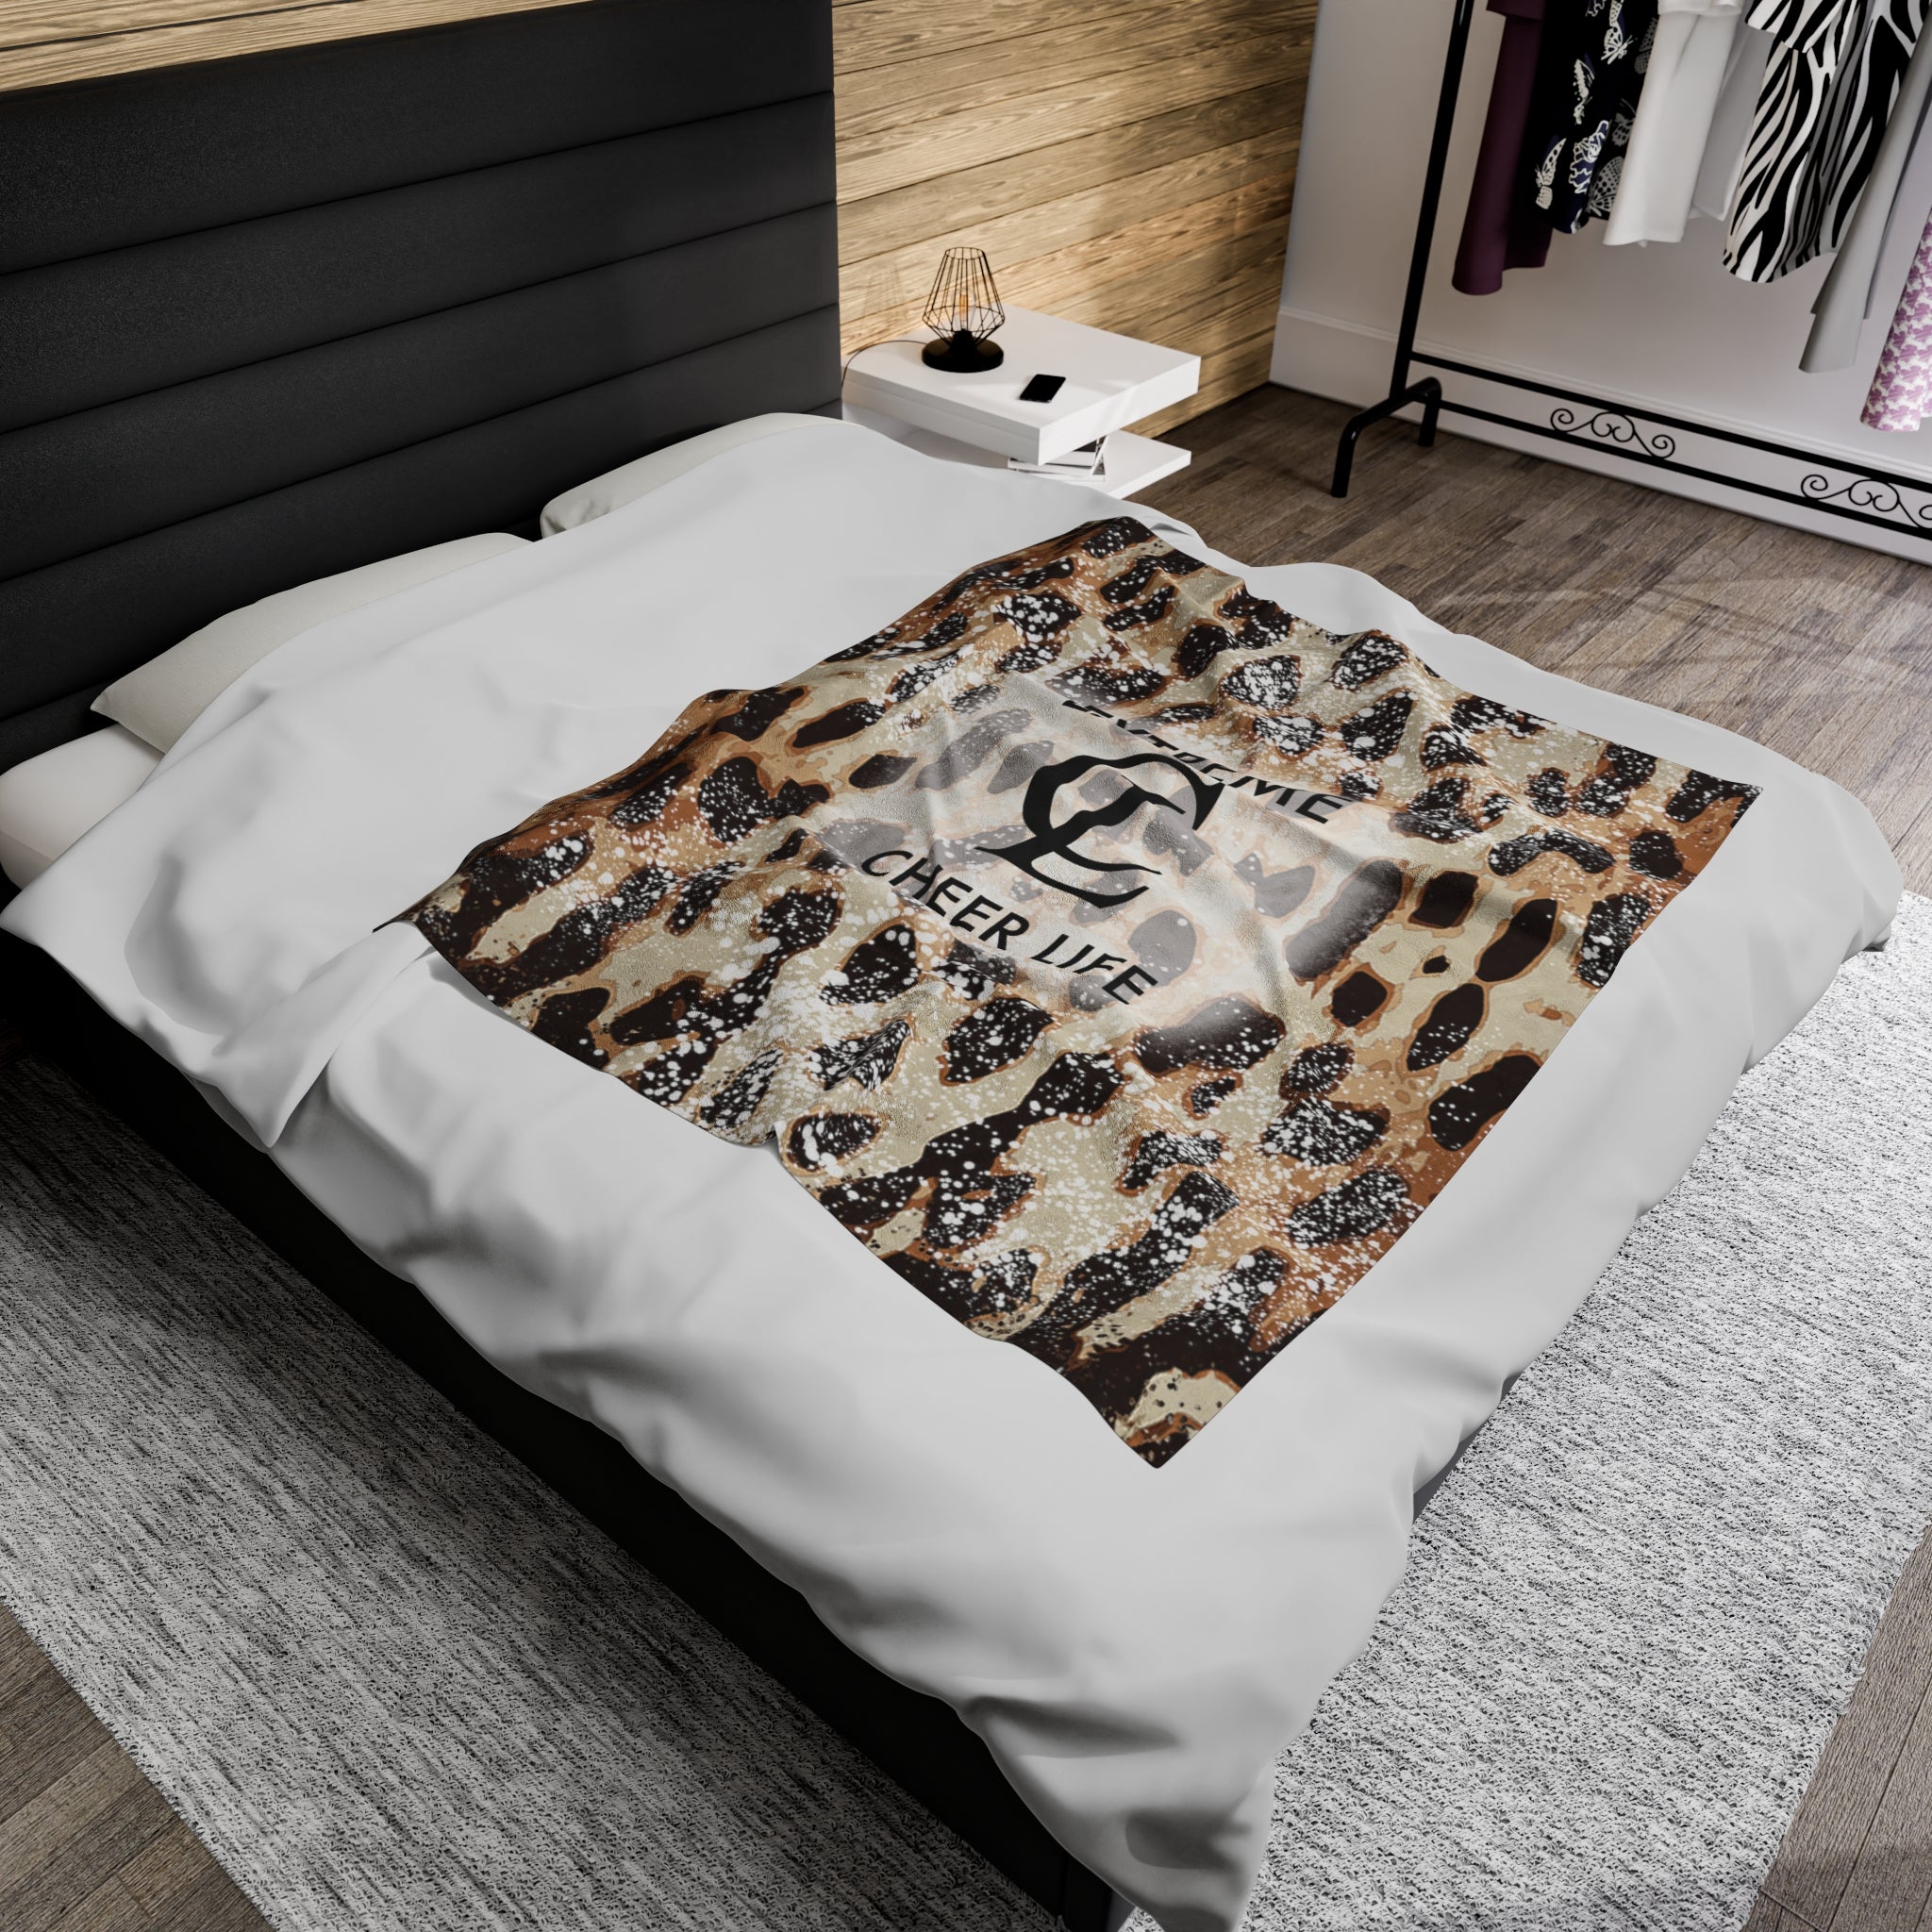 Velveteen Plush Blanket | EXTREME CHEER LIFE